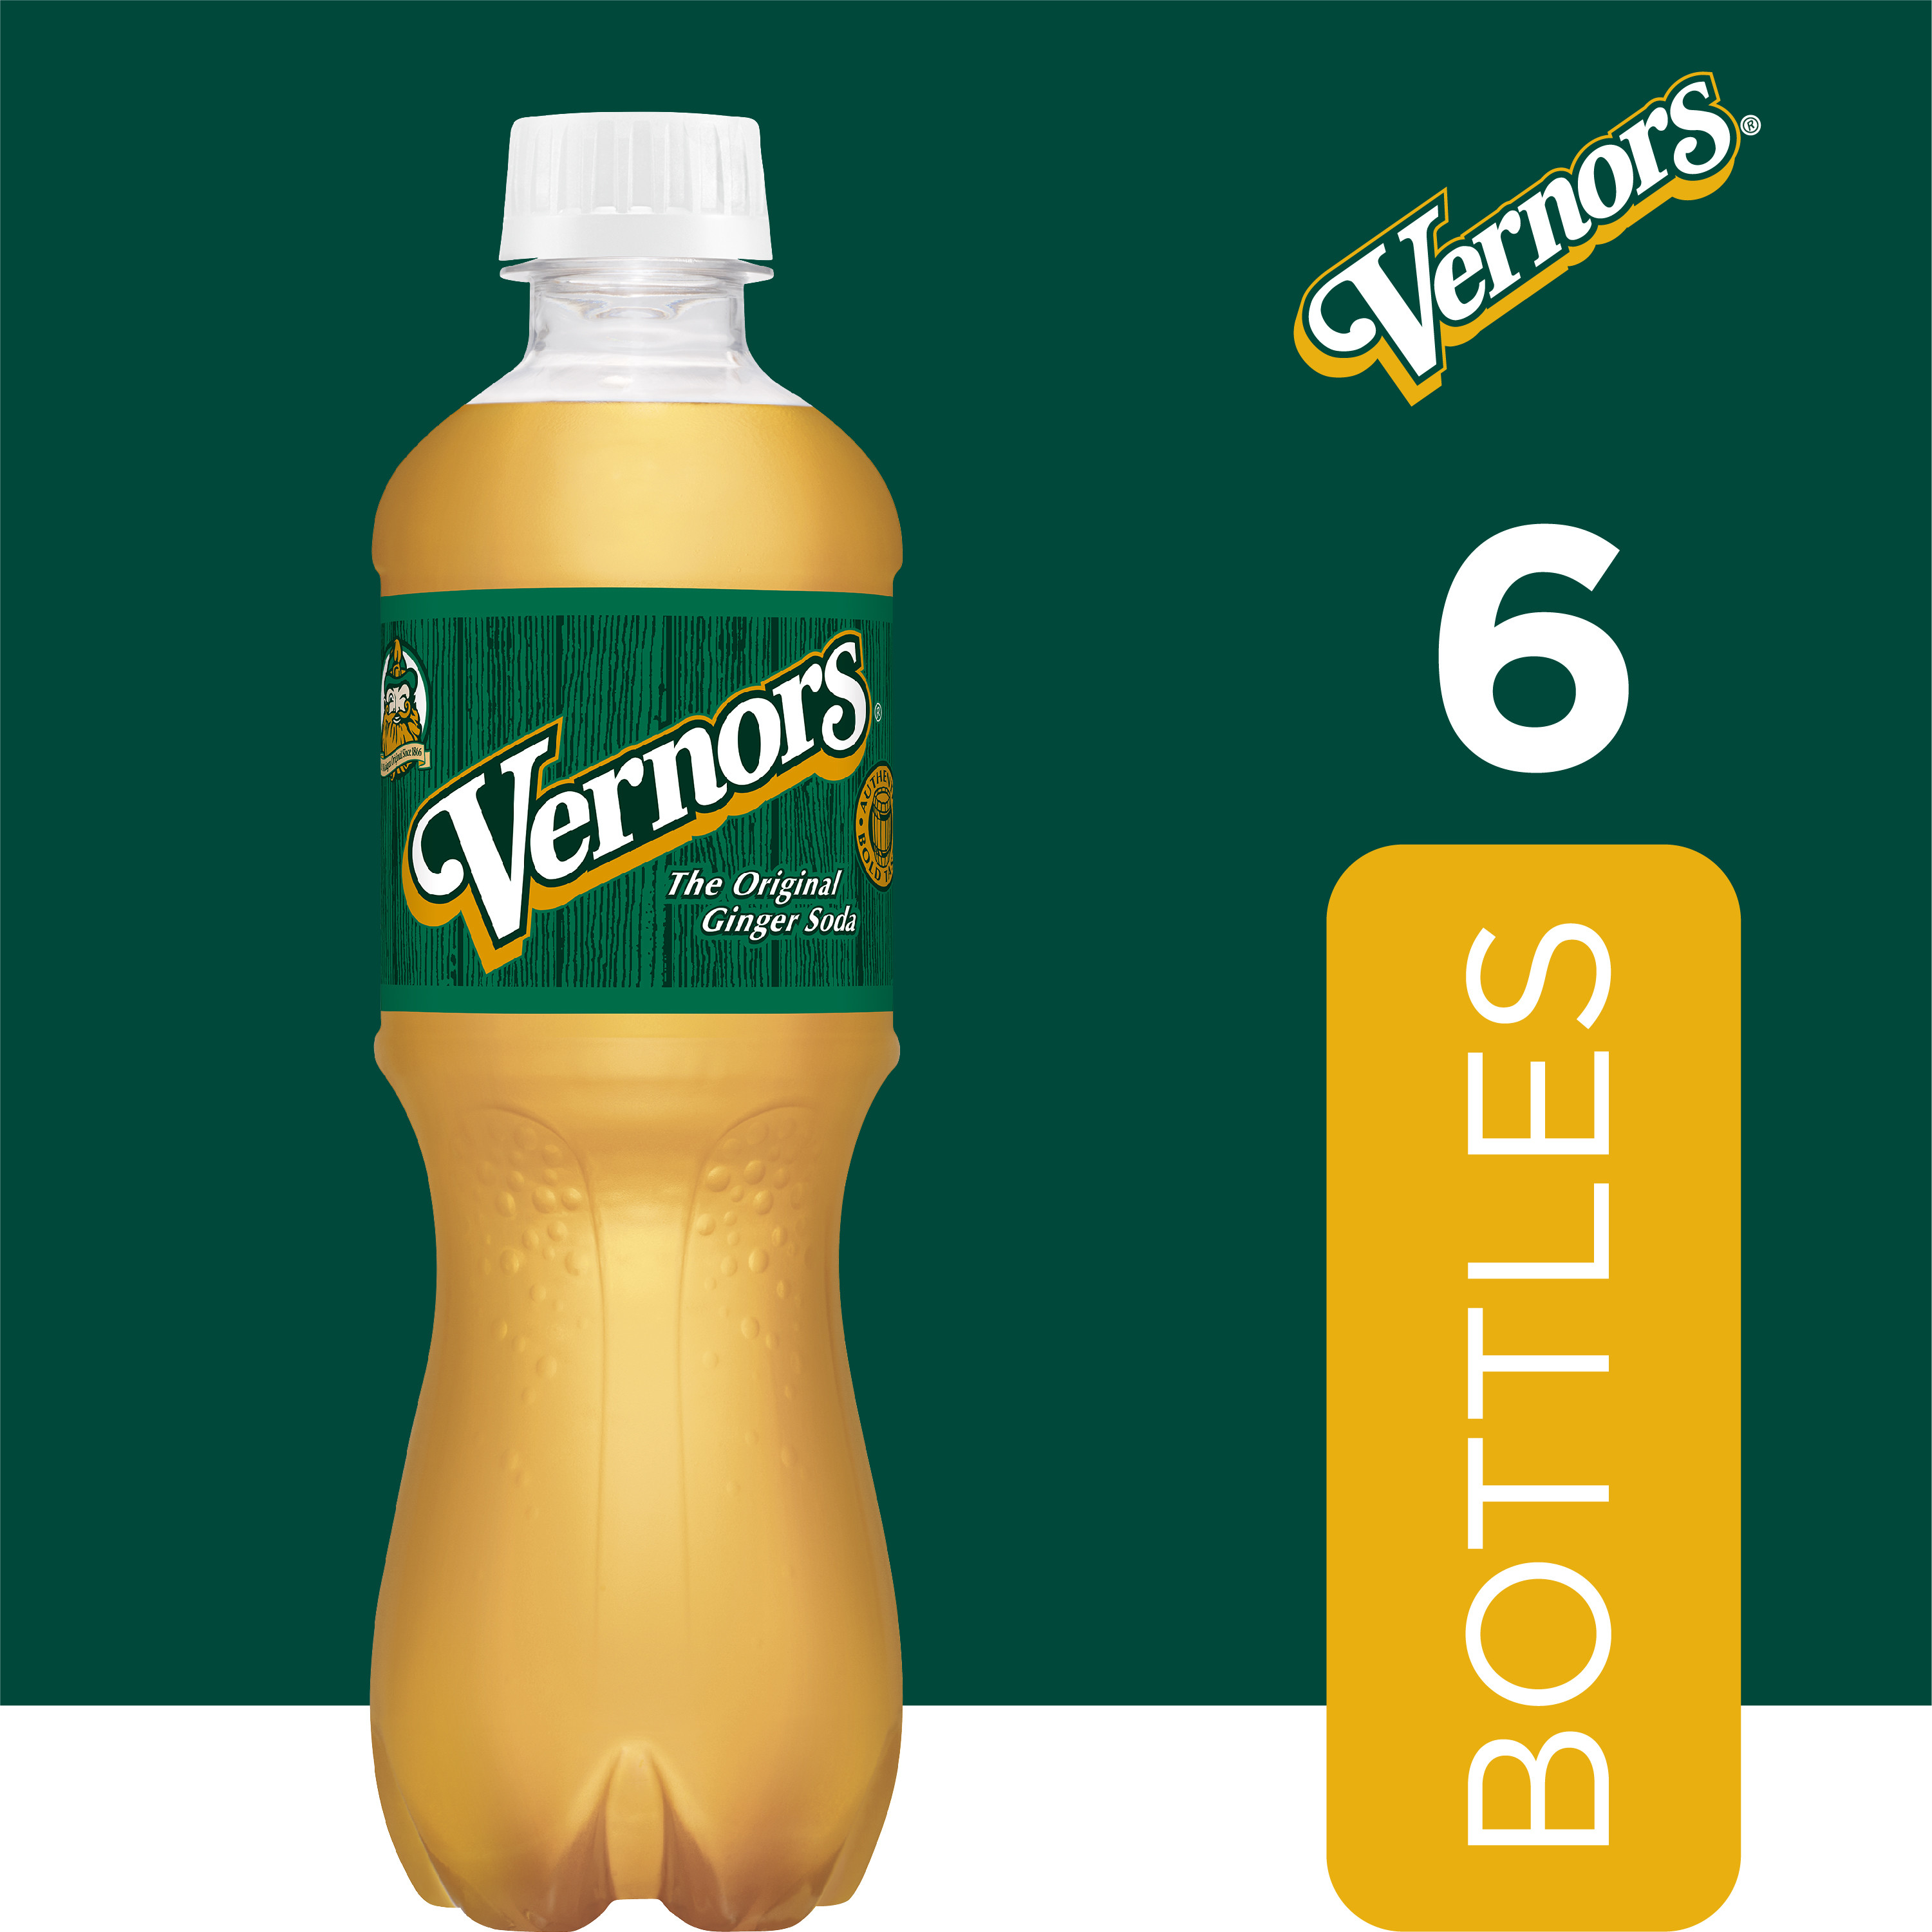 Vernors Caffeine Free Ginger Ale Soda Pop, 16.9 fl oz, 6 Pack Bottles - image 3 of 13